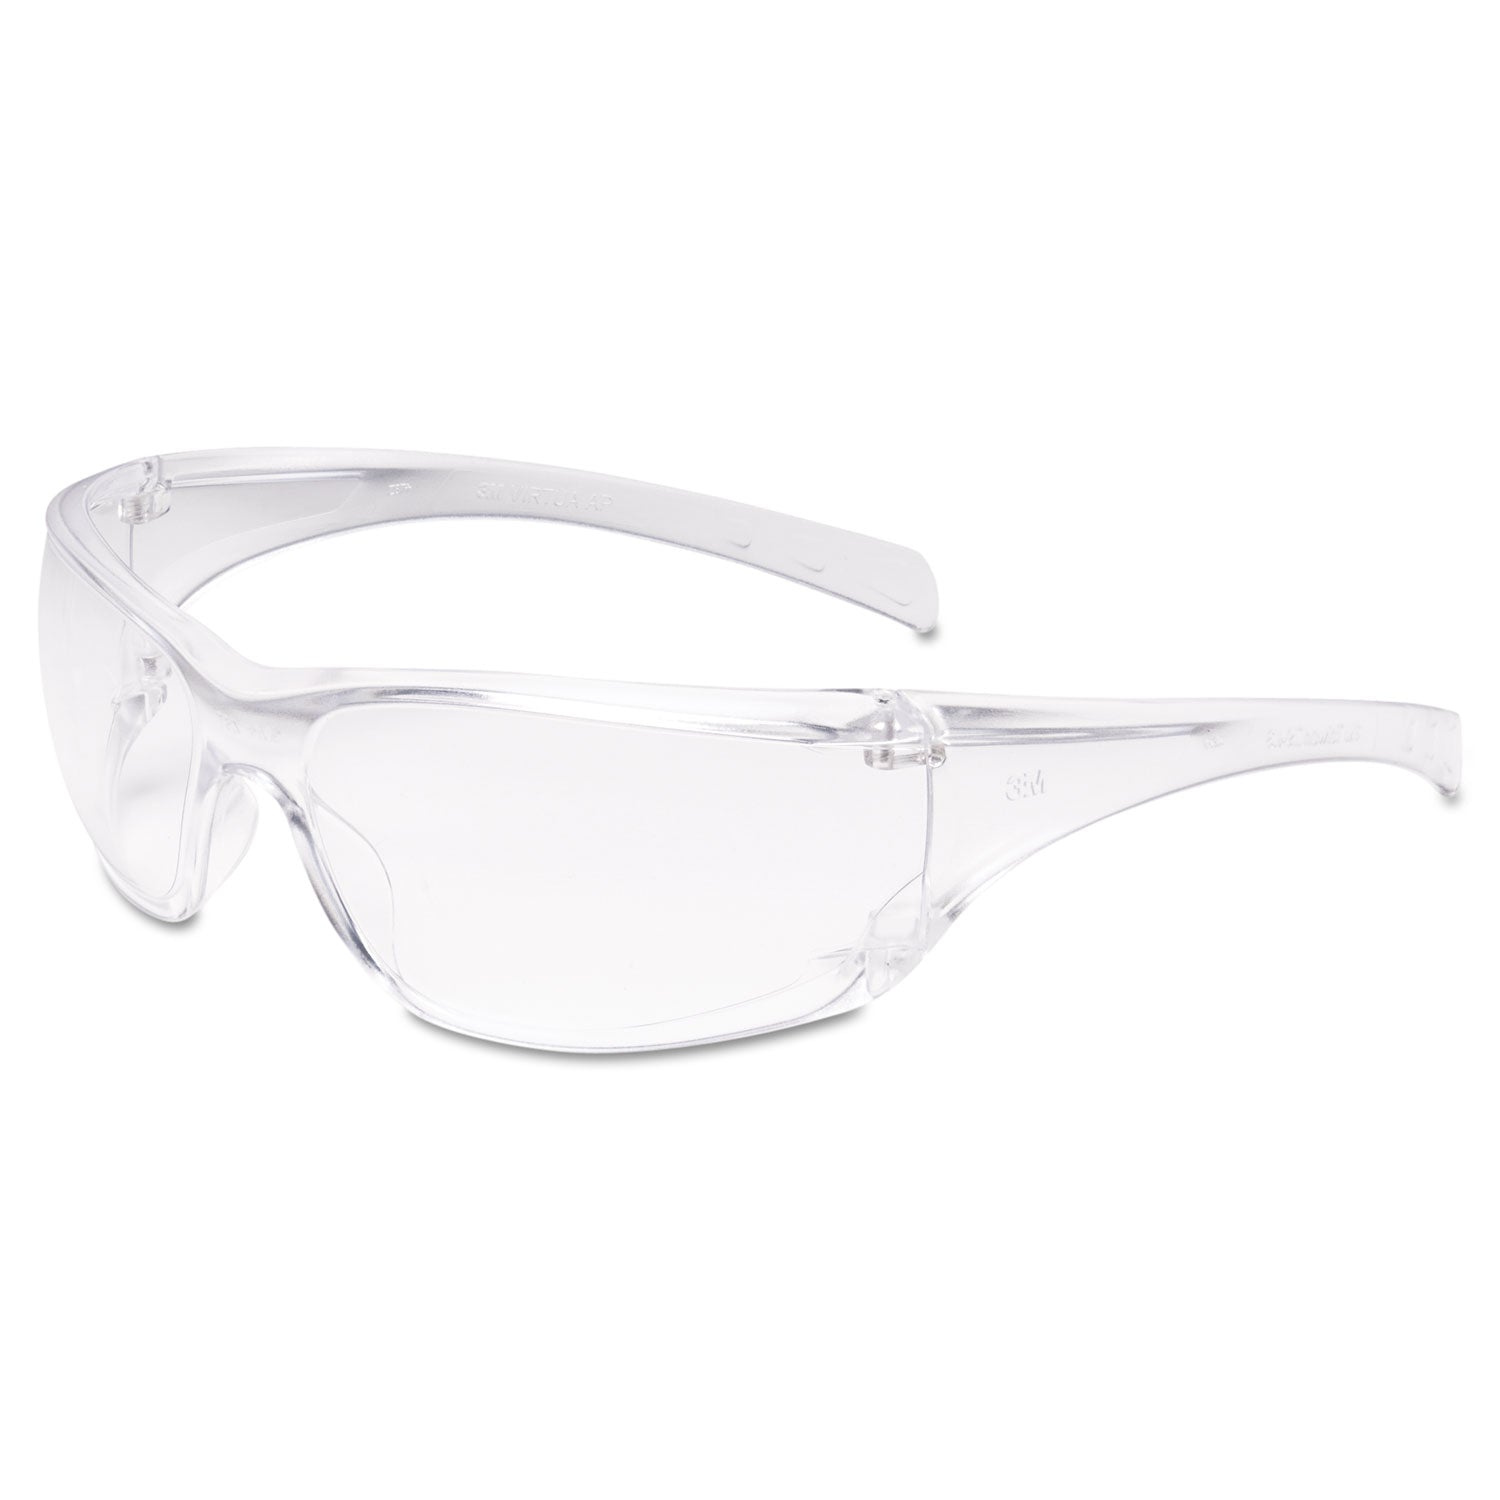 Virtua AP Protective Eyewear, Clear Frame and Anti-Fog Lens, 20/Carton - 